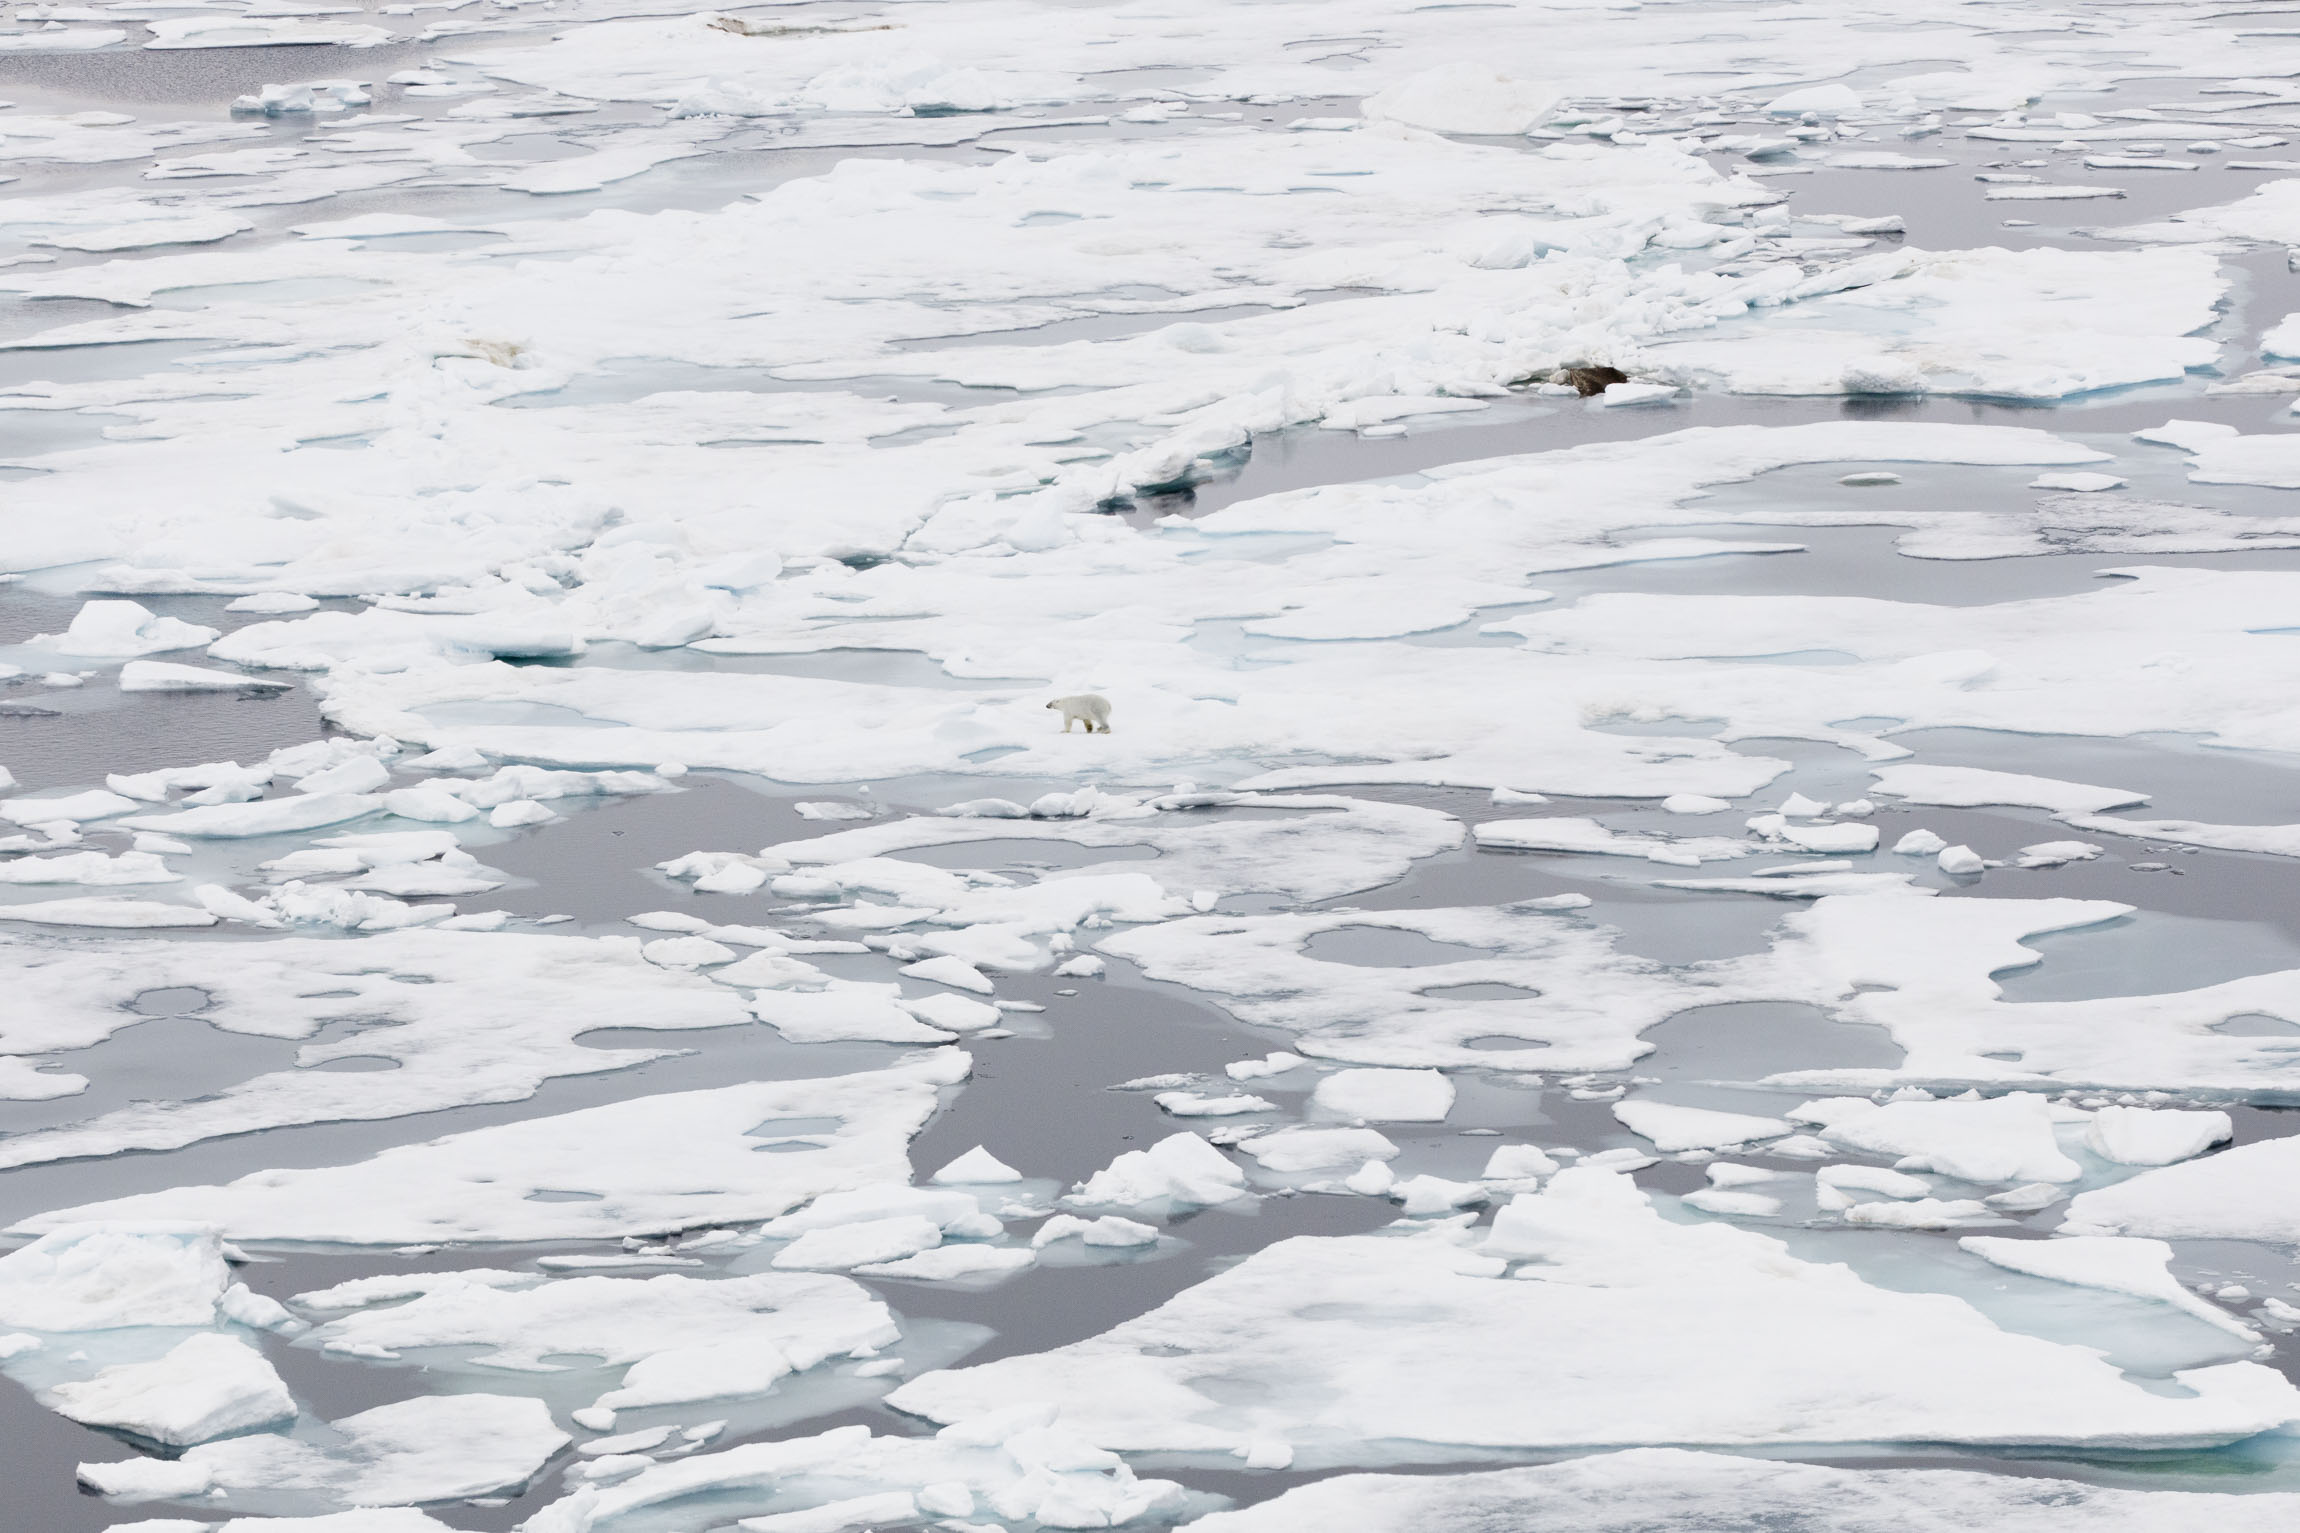 A solitary polar bear on Arctic sea ice